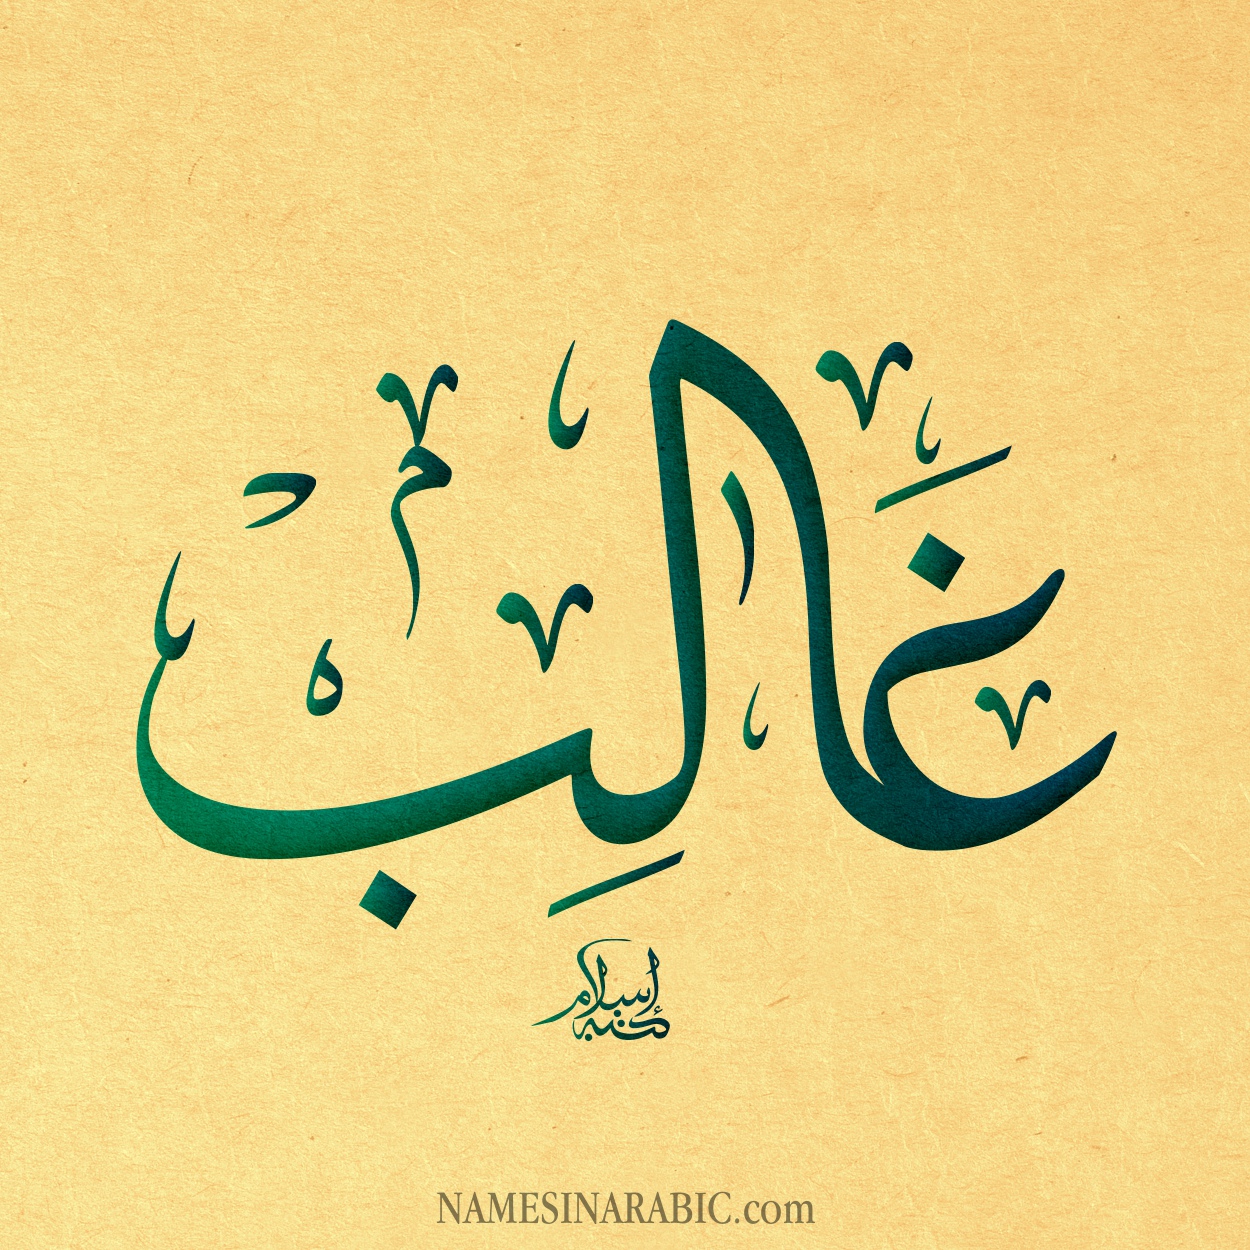 Ghalib-Name-in-Arabic-Calligraphy.jpg